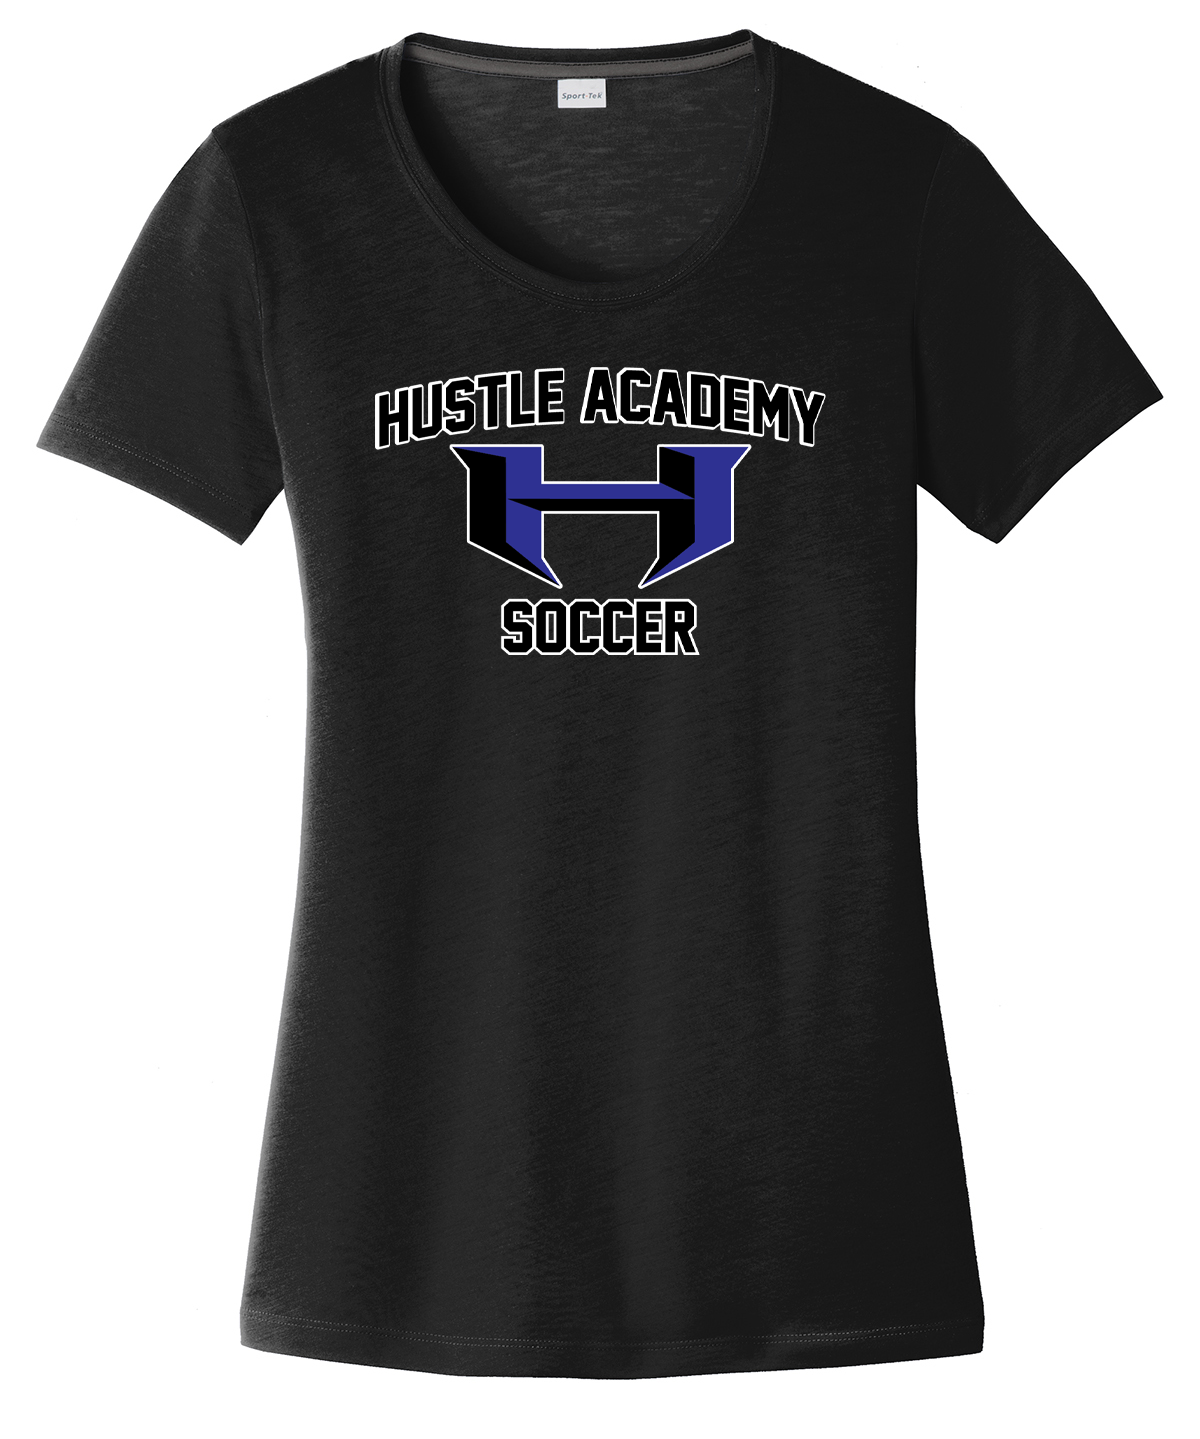 Hustle Academy Soccer Women's CottonTouch Performance T-Shirt